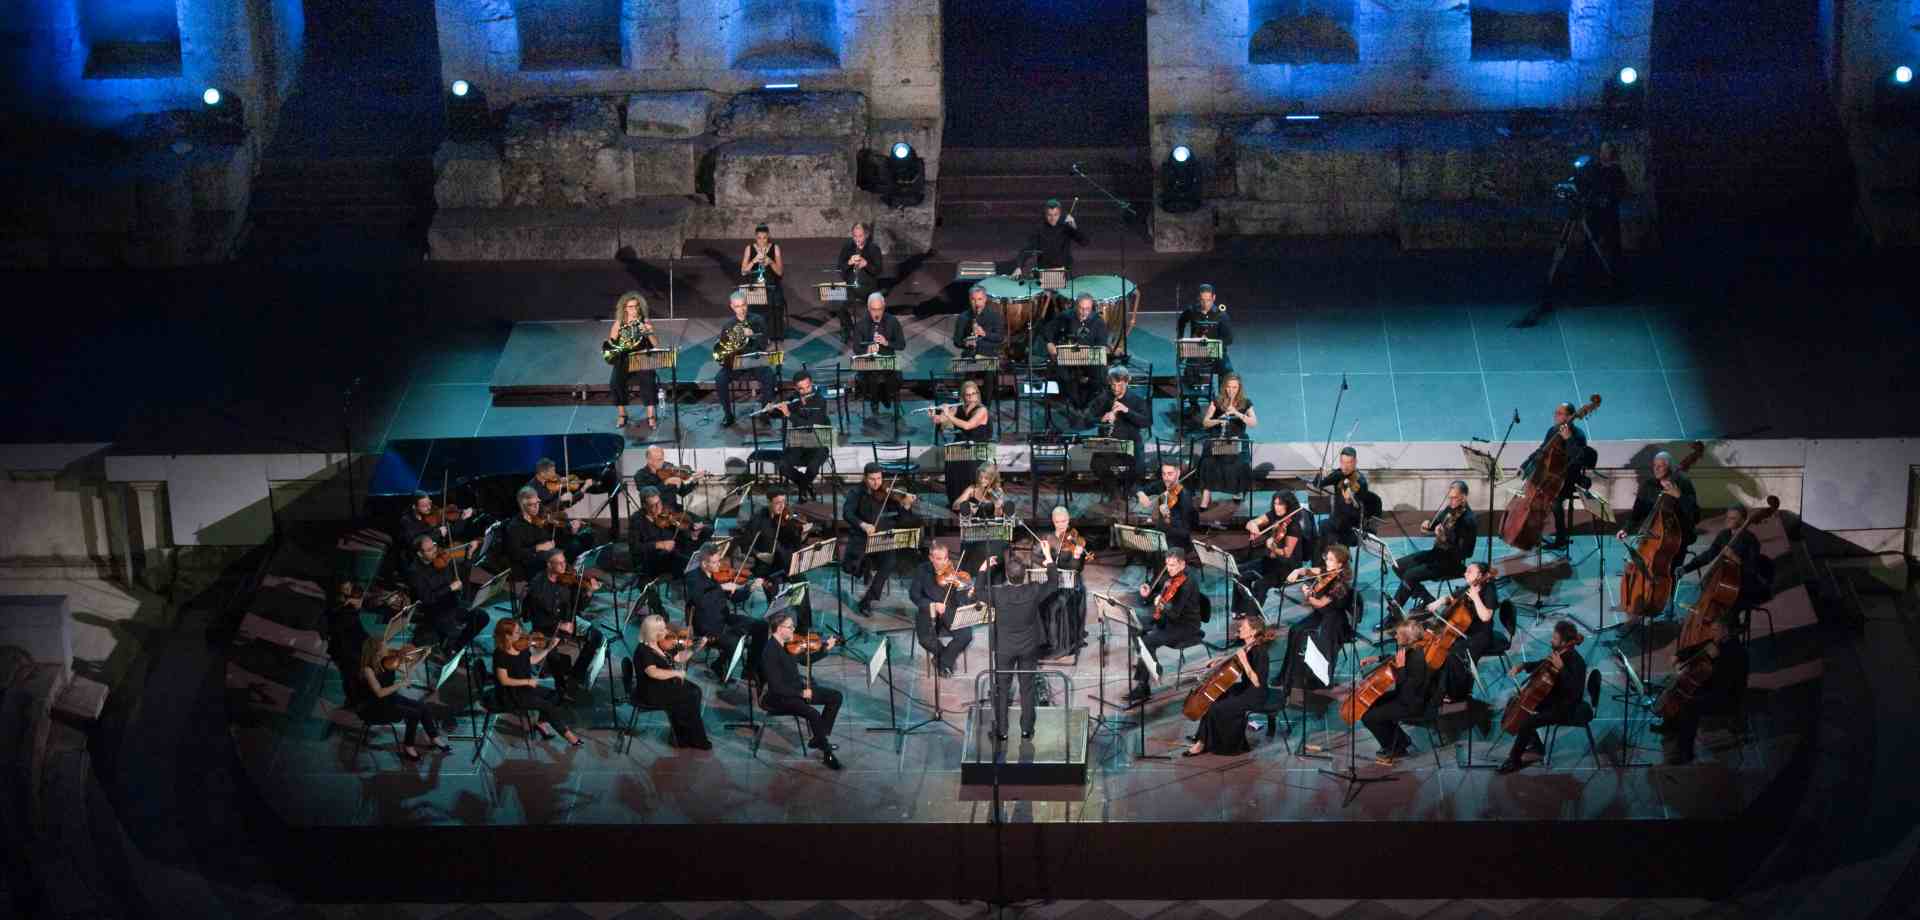 Εθνική Συμφωνική Ορχήστρα της ΕΡΤ - Ηρώδειο